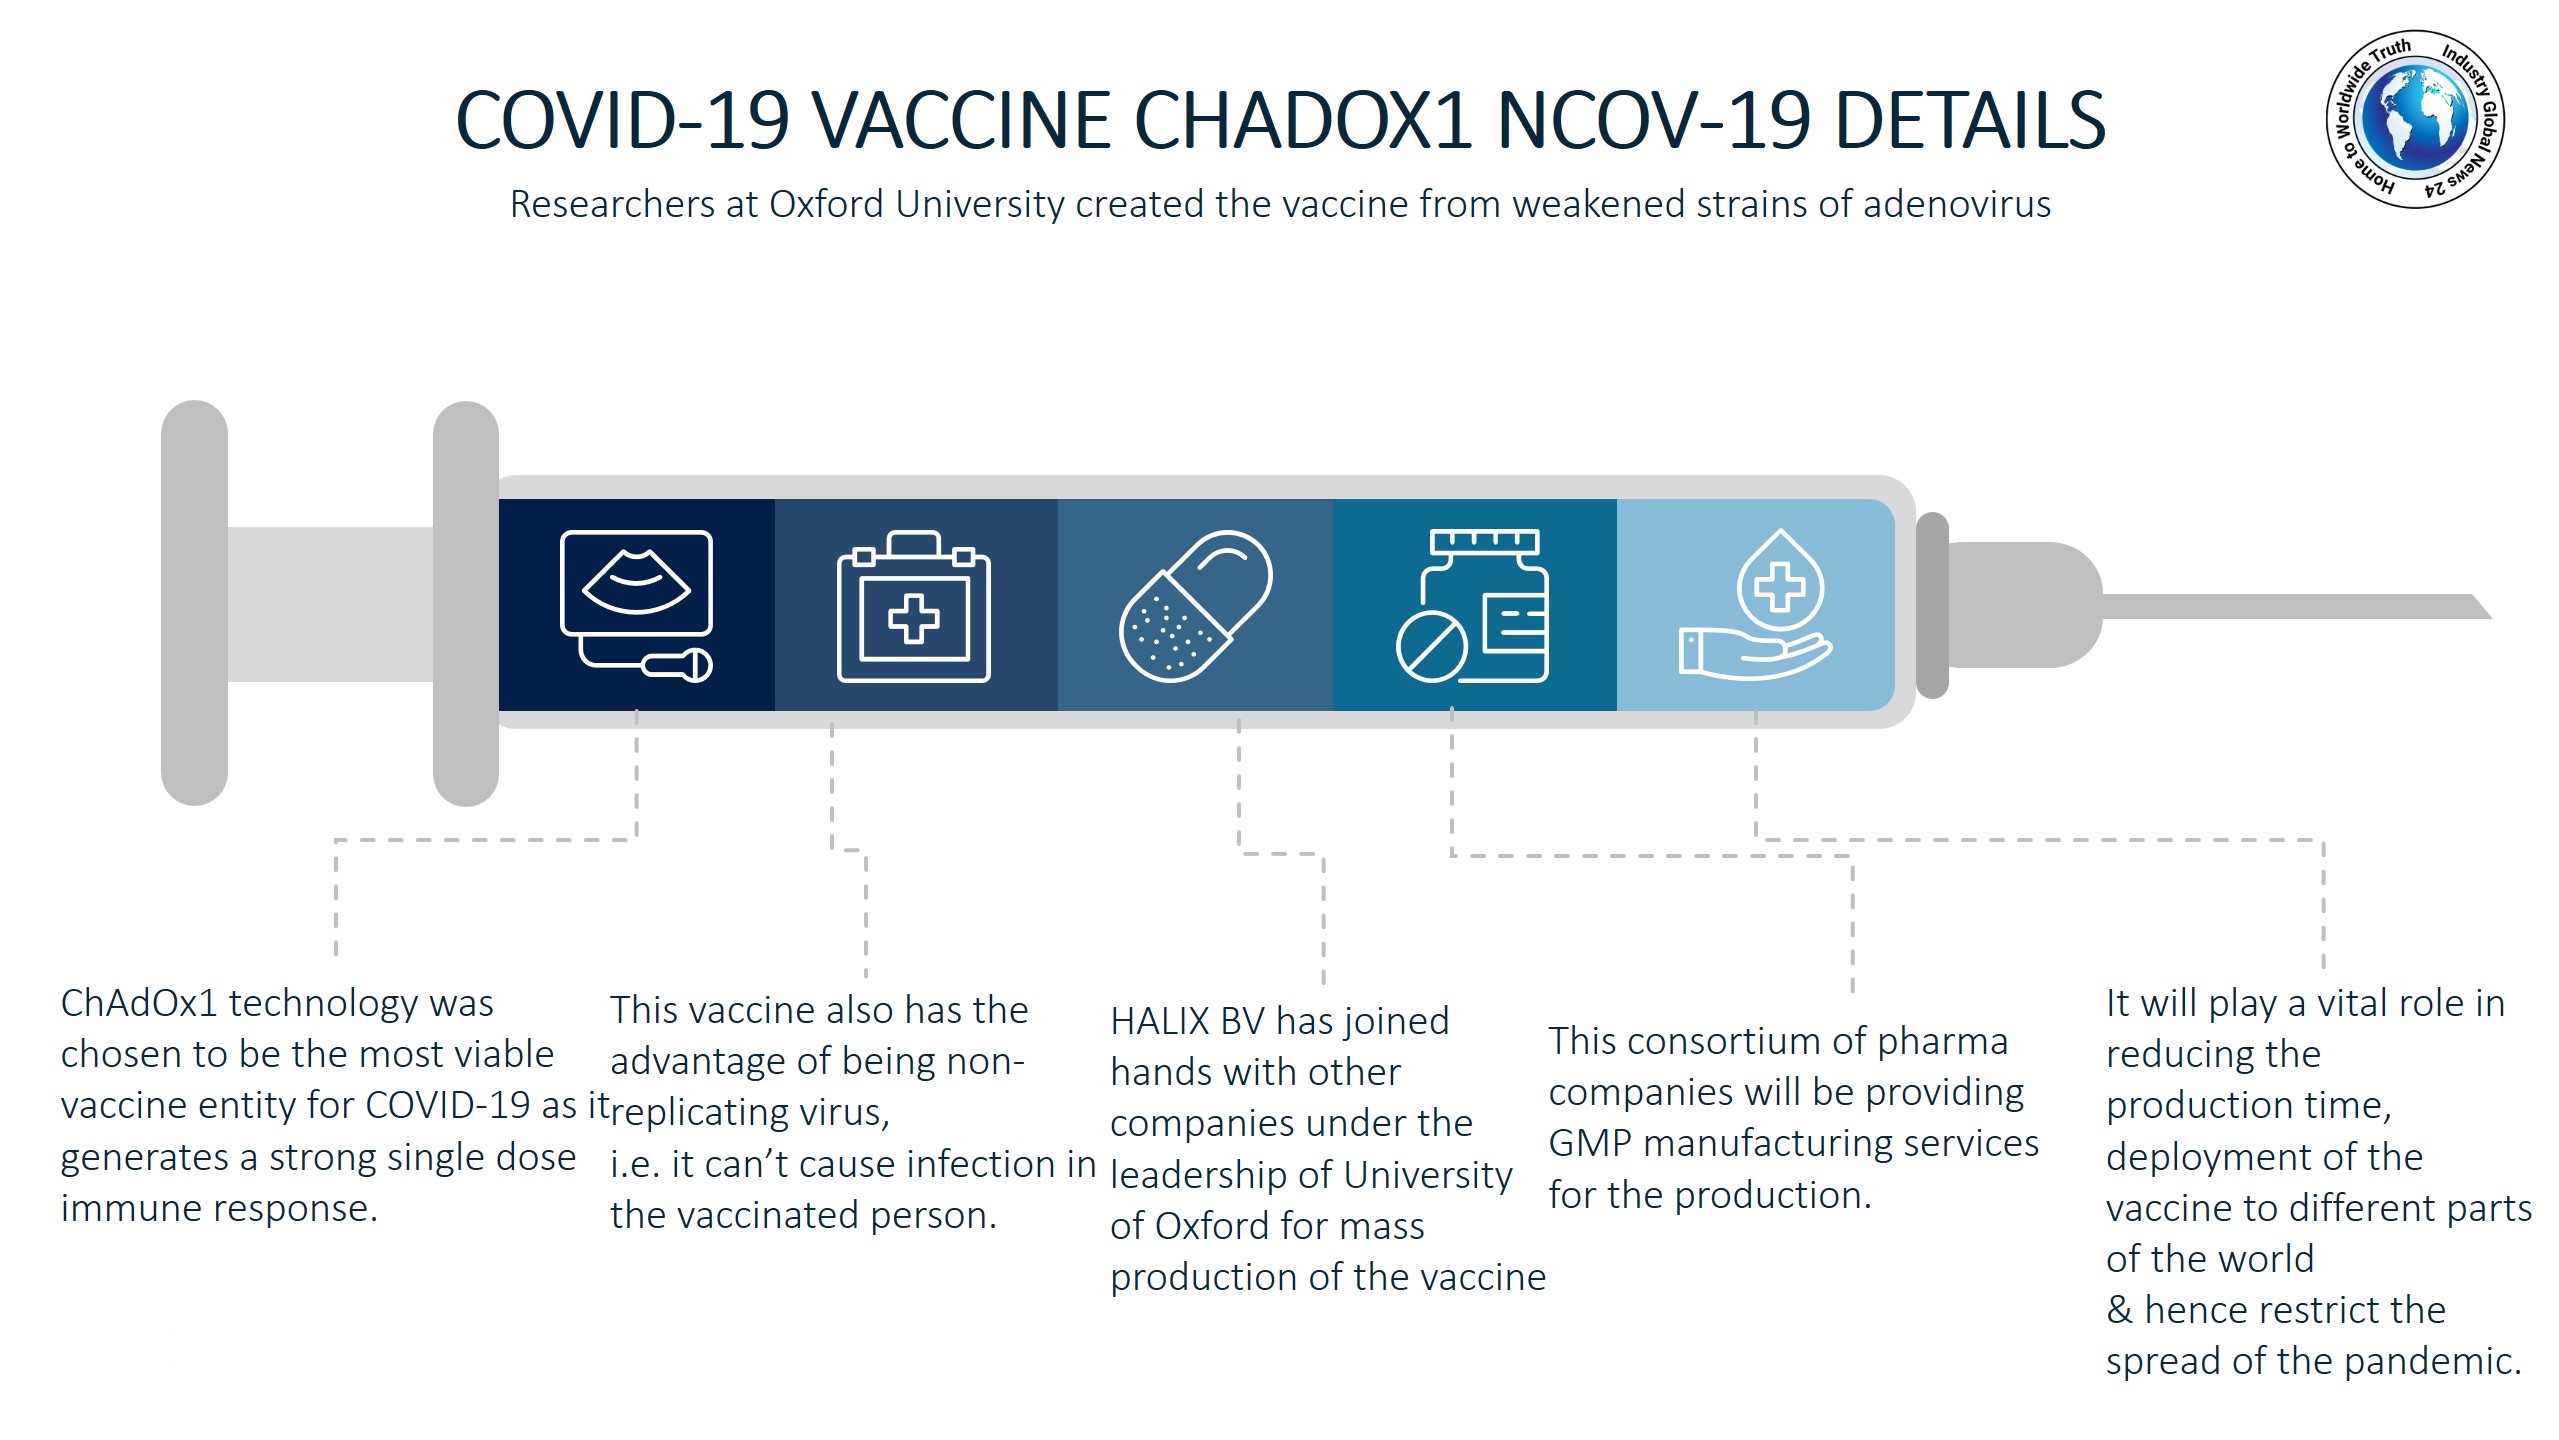 COVID-19 vaccine ChAdOx1 nCoV-19 details